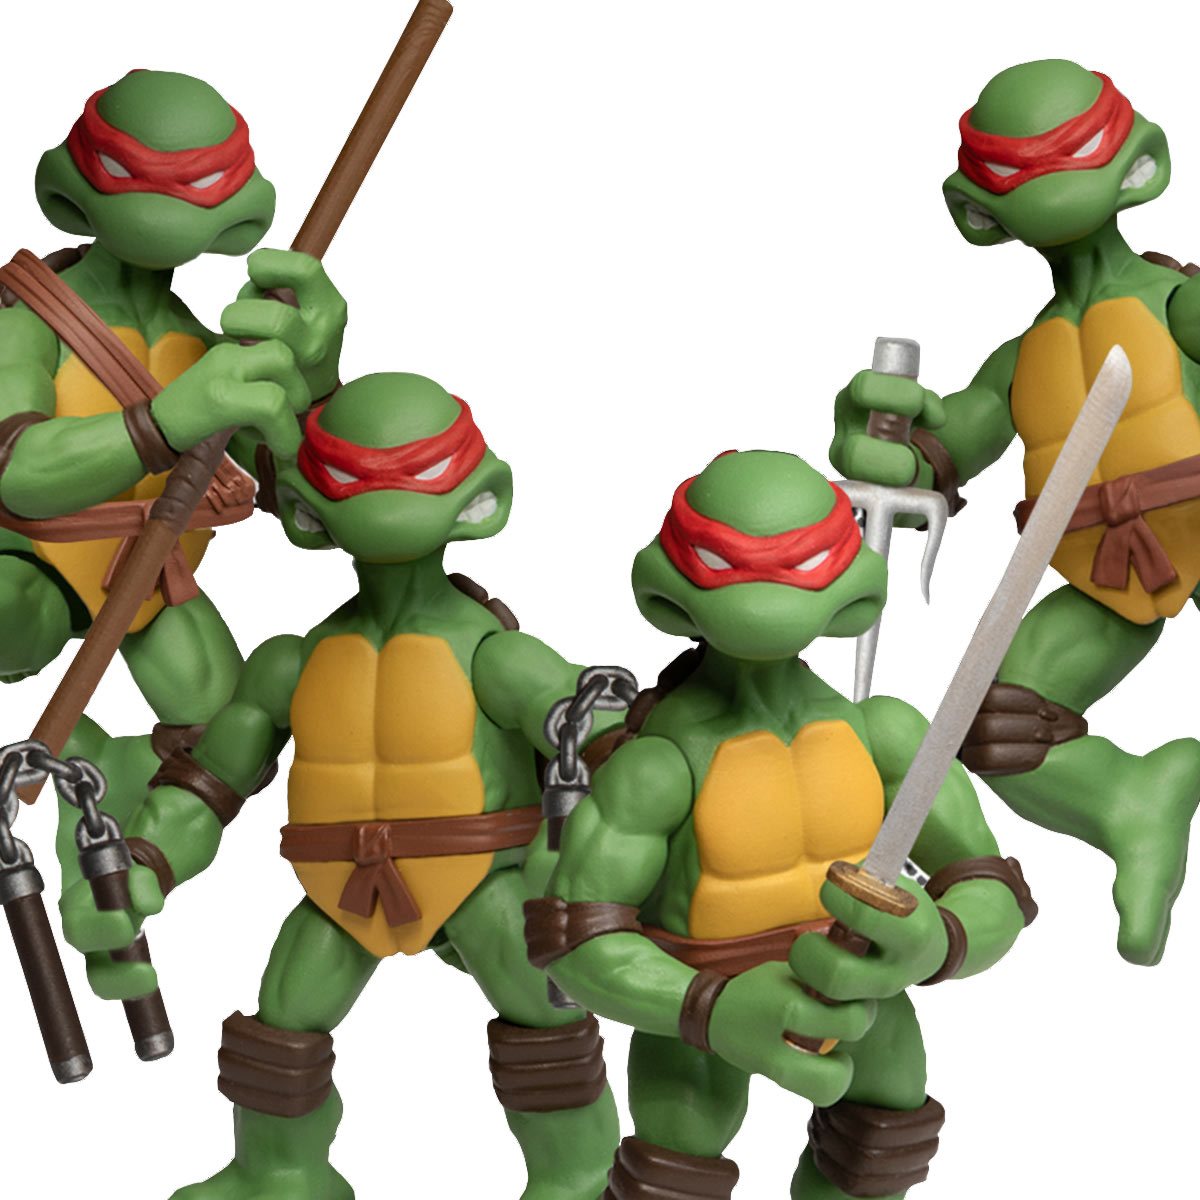 Teenage Mutant Ninja Turtles 5 Piece Gift Set